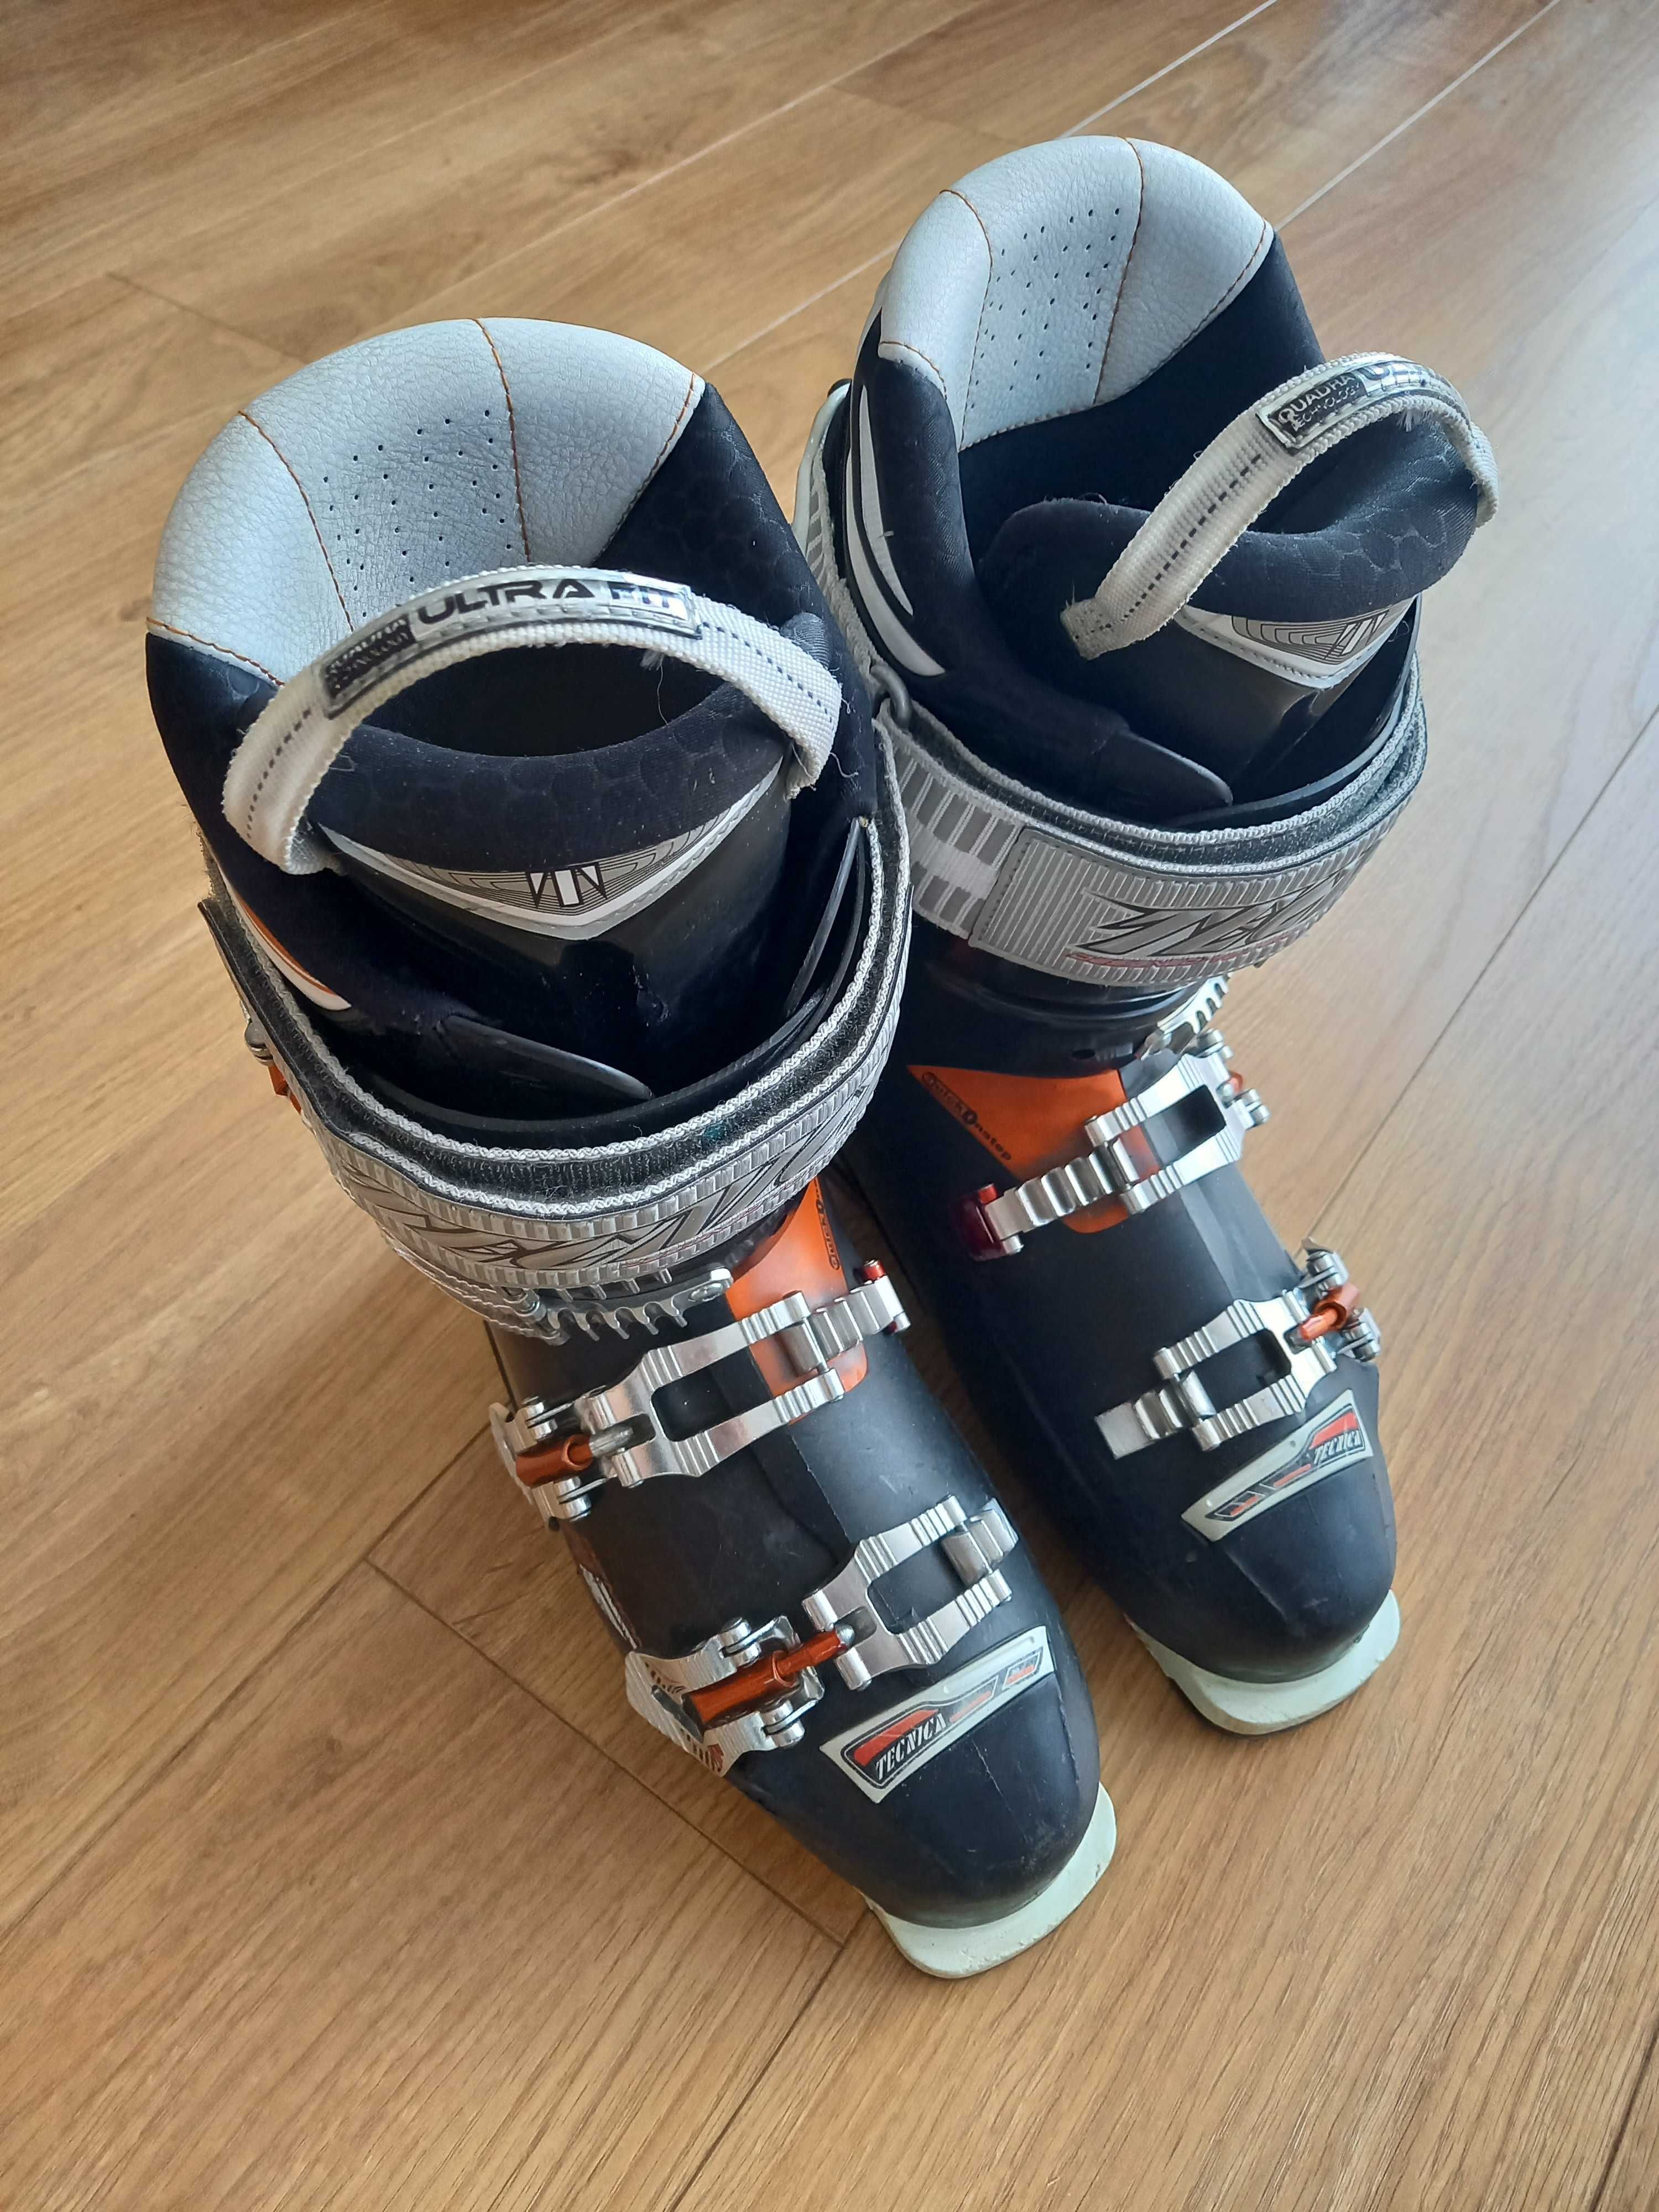 buty narciarskie Technica